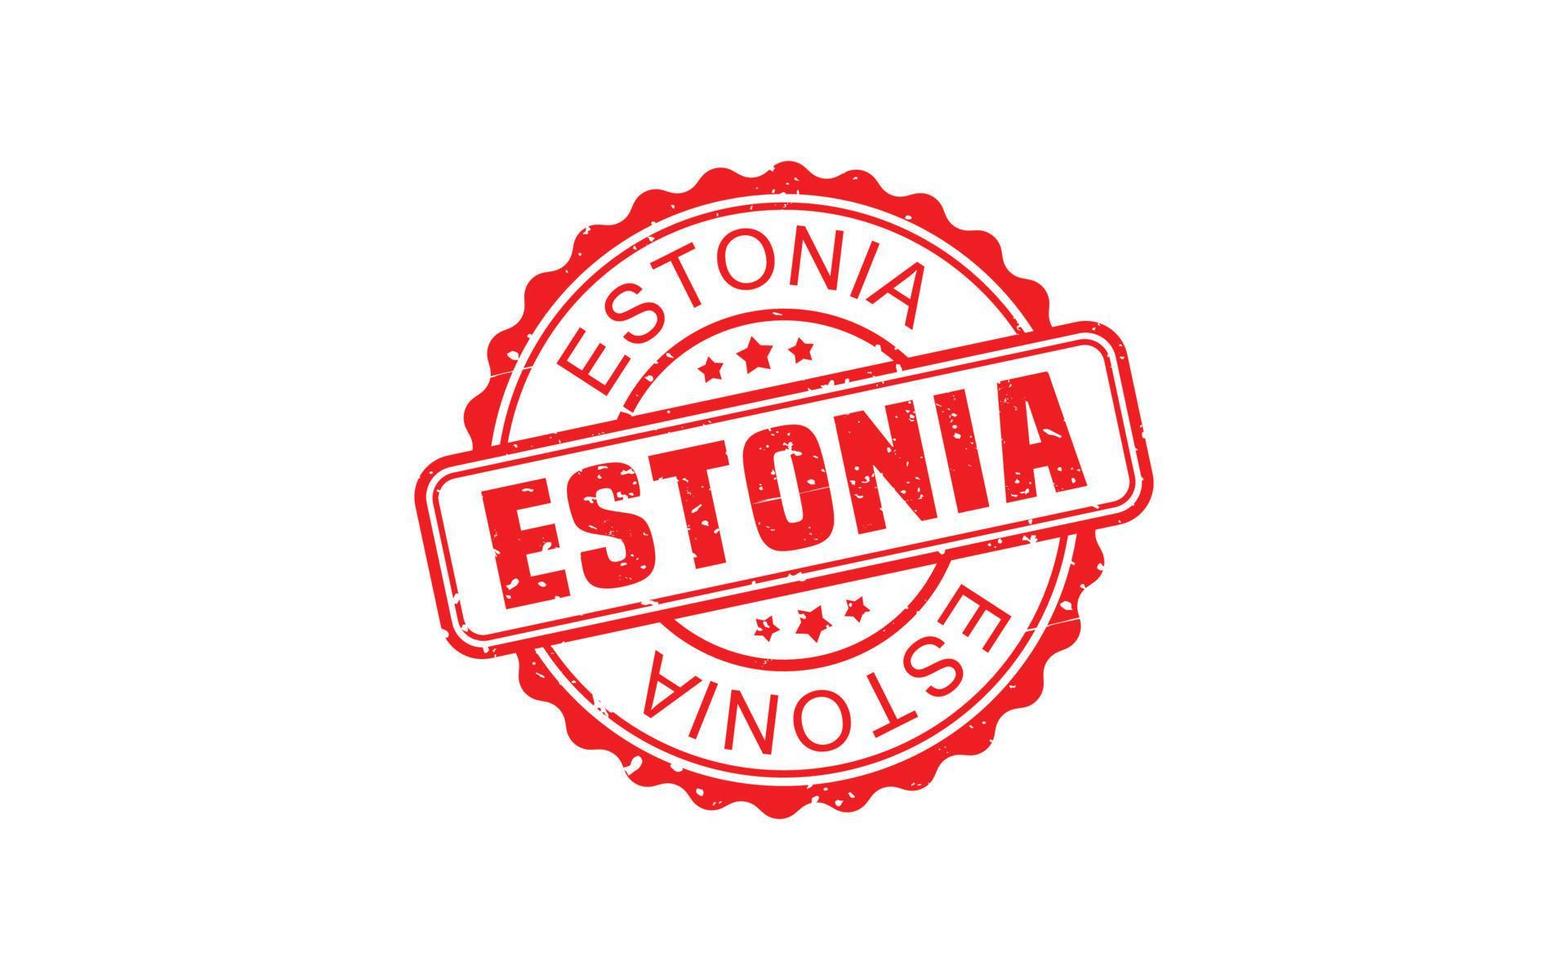 Estland Stempelgummi mit Grunge-Stil auf weißem Hintergrund vektor